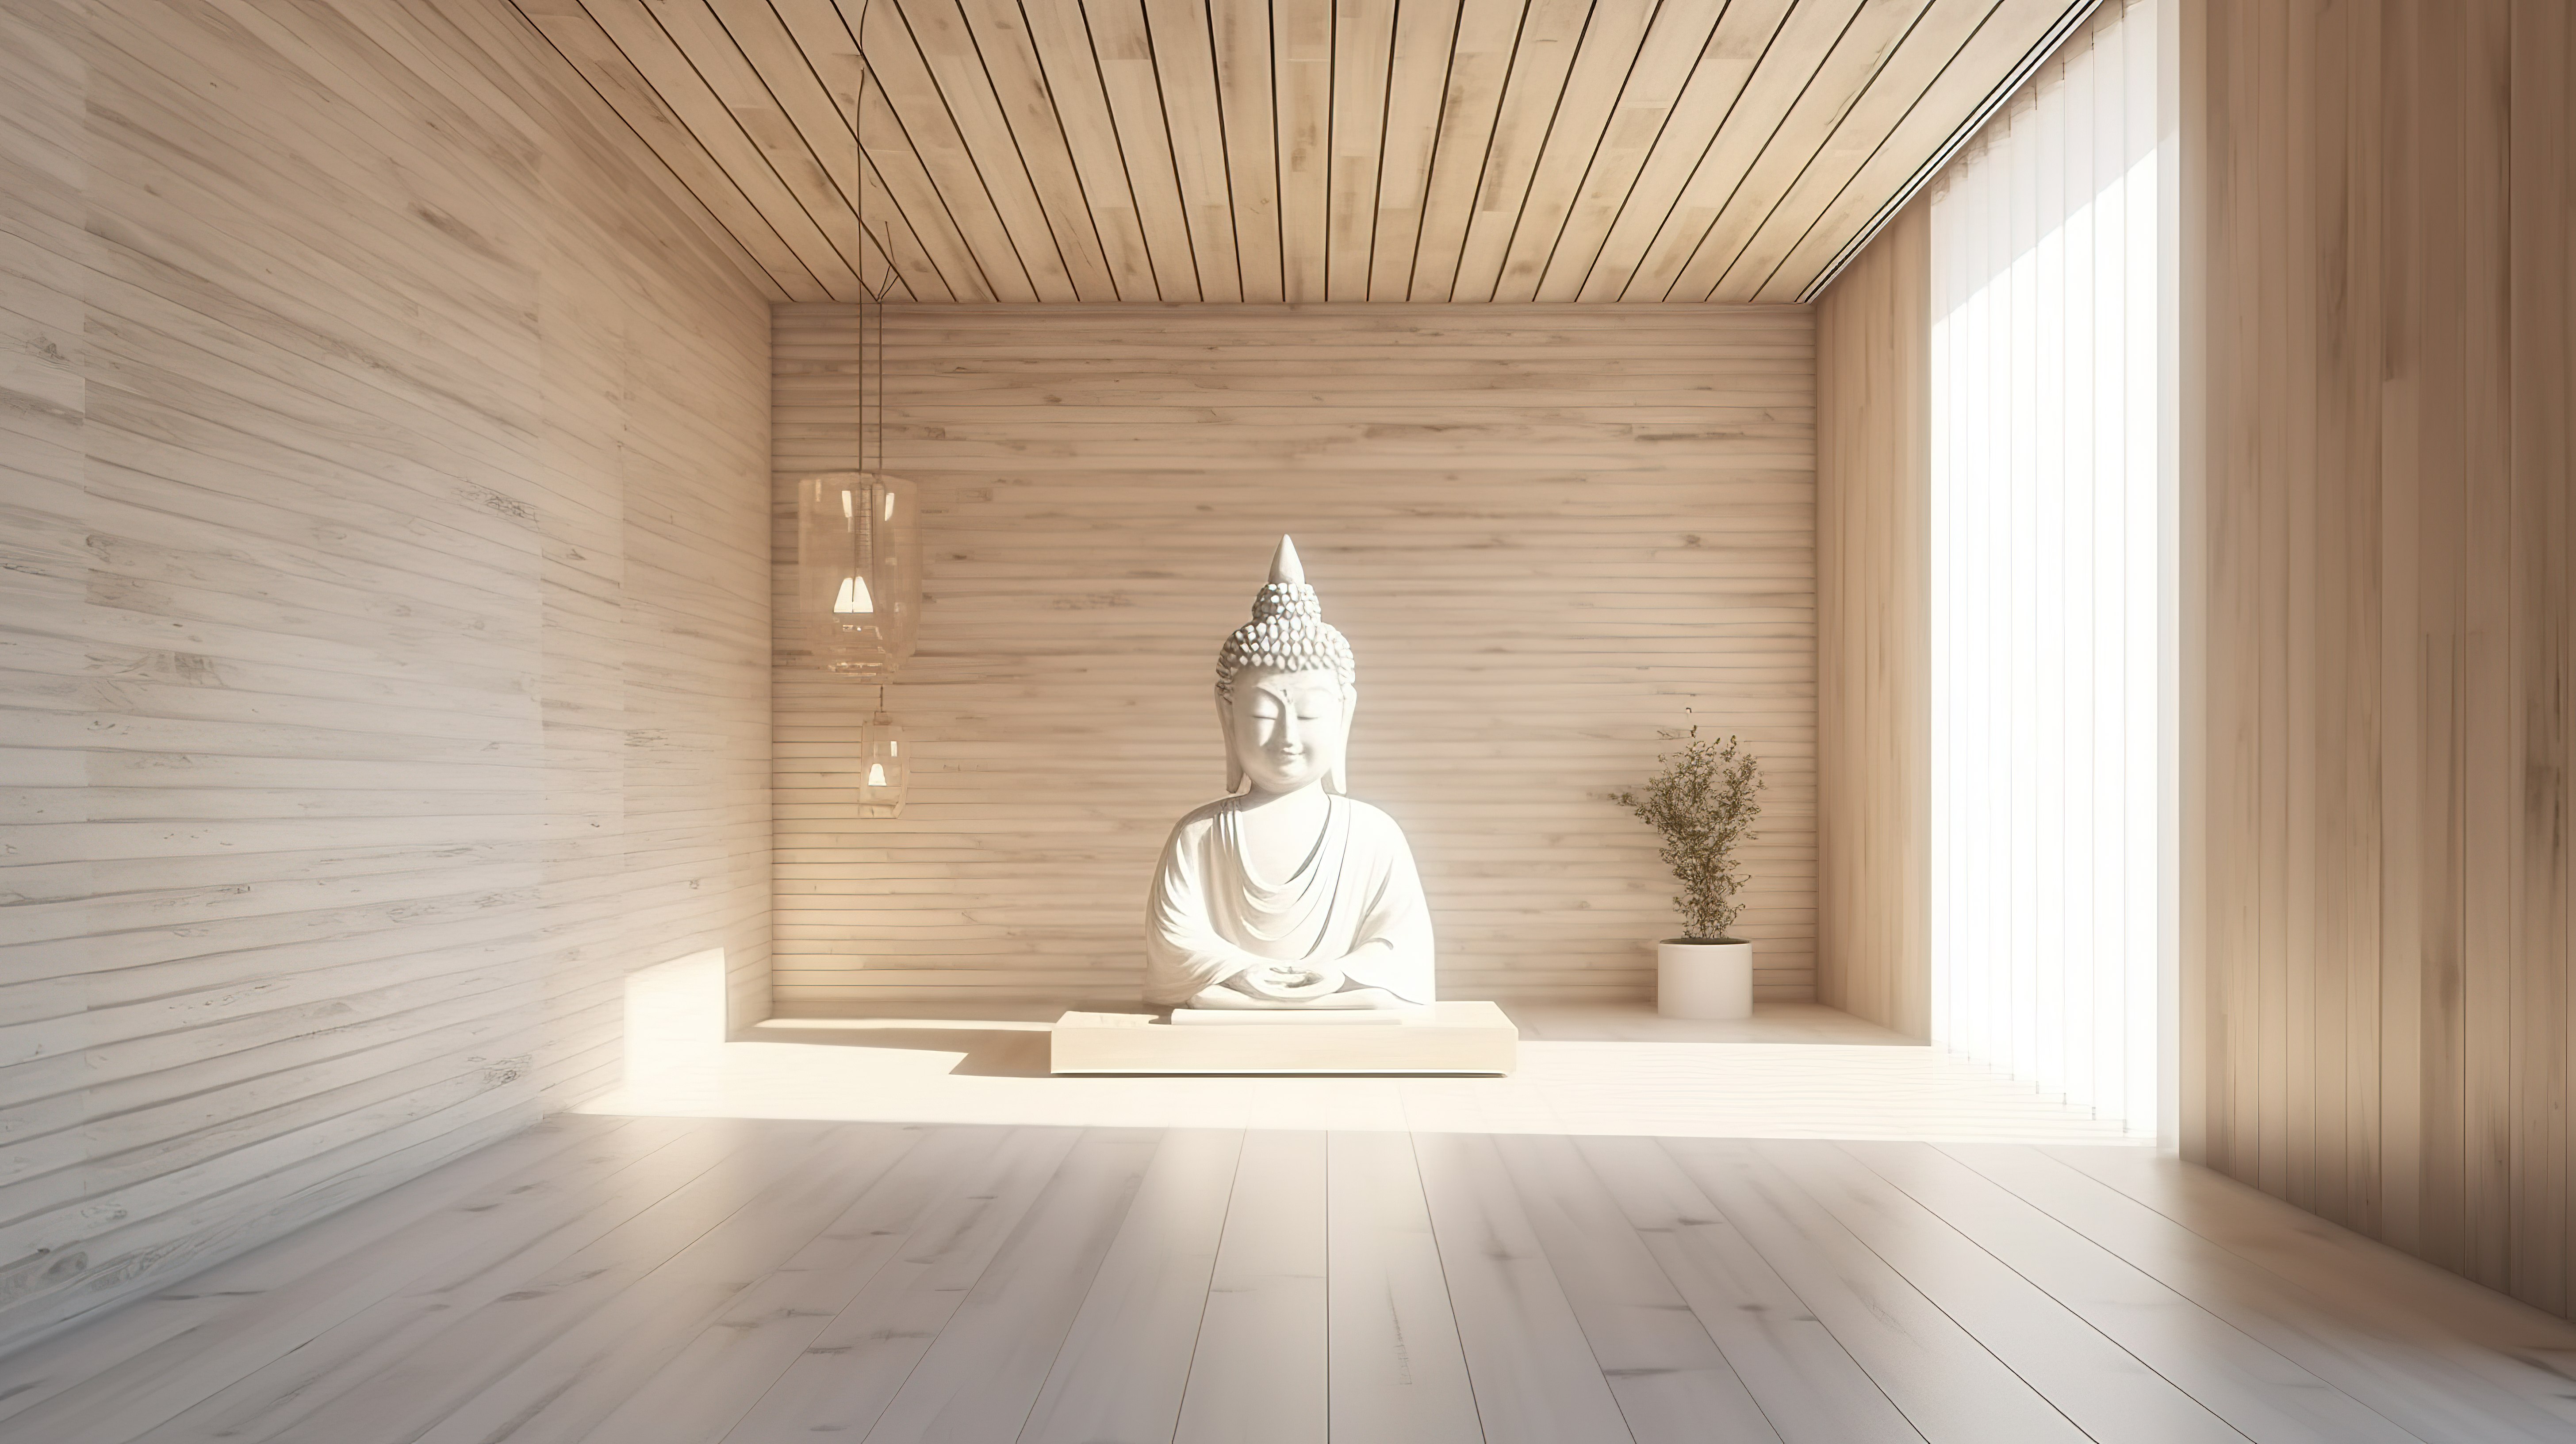 阳光照射的 3D 渲染中带有木质和白色特色墙的当代佛祈祷室图片